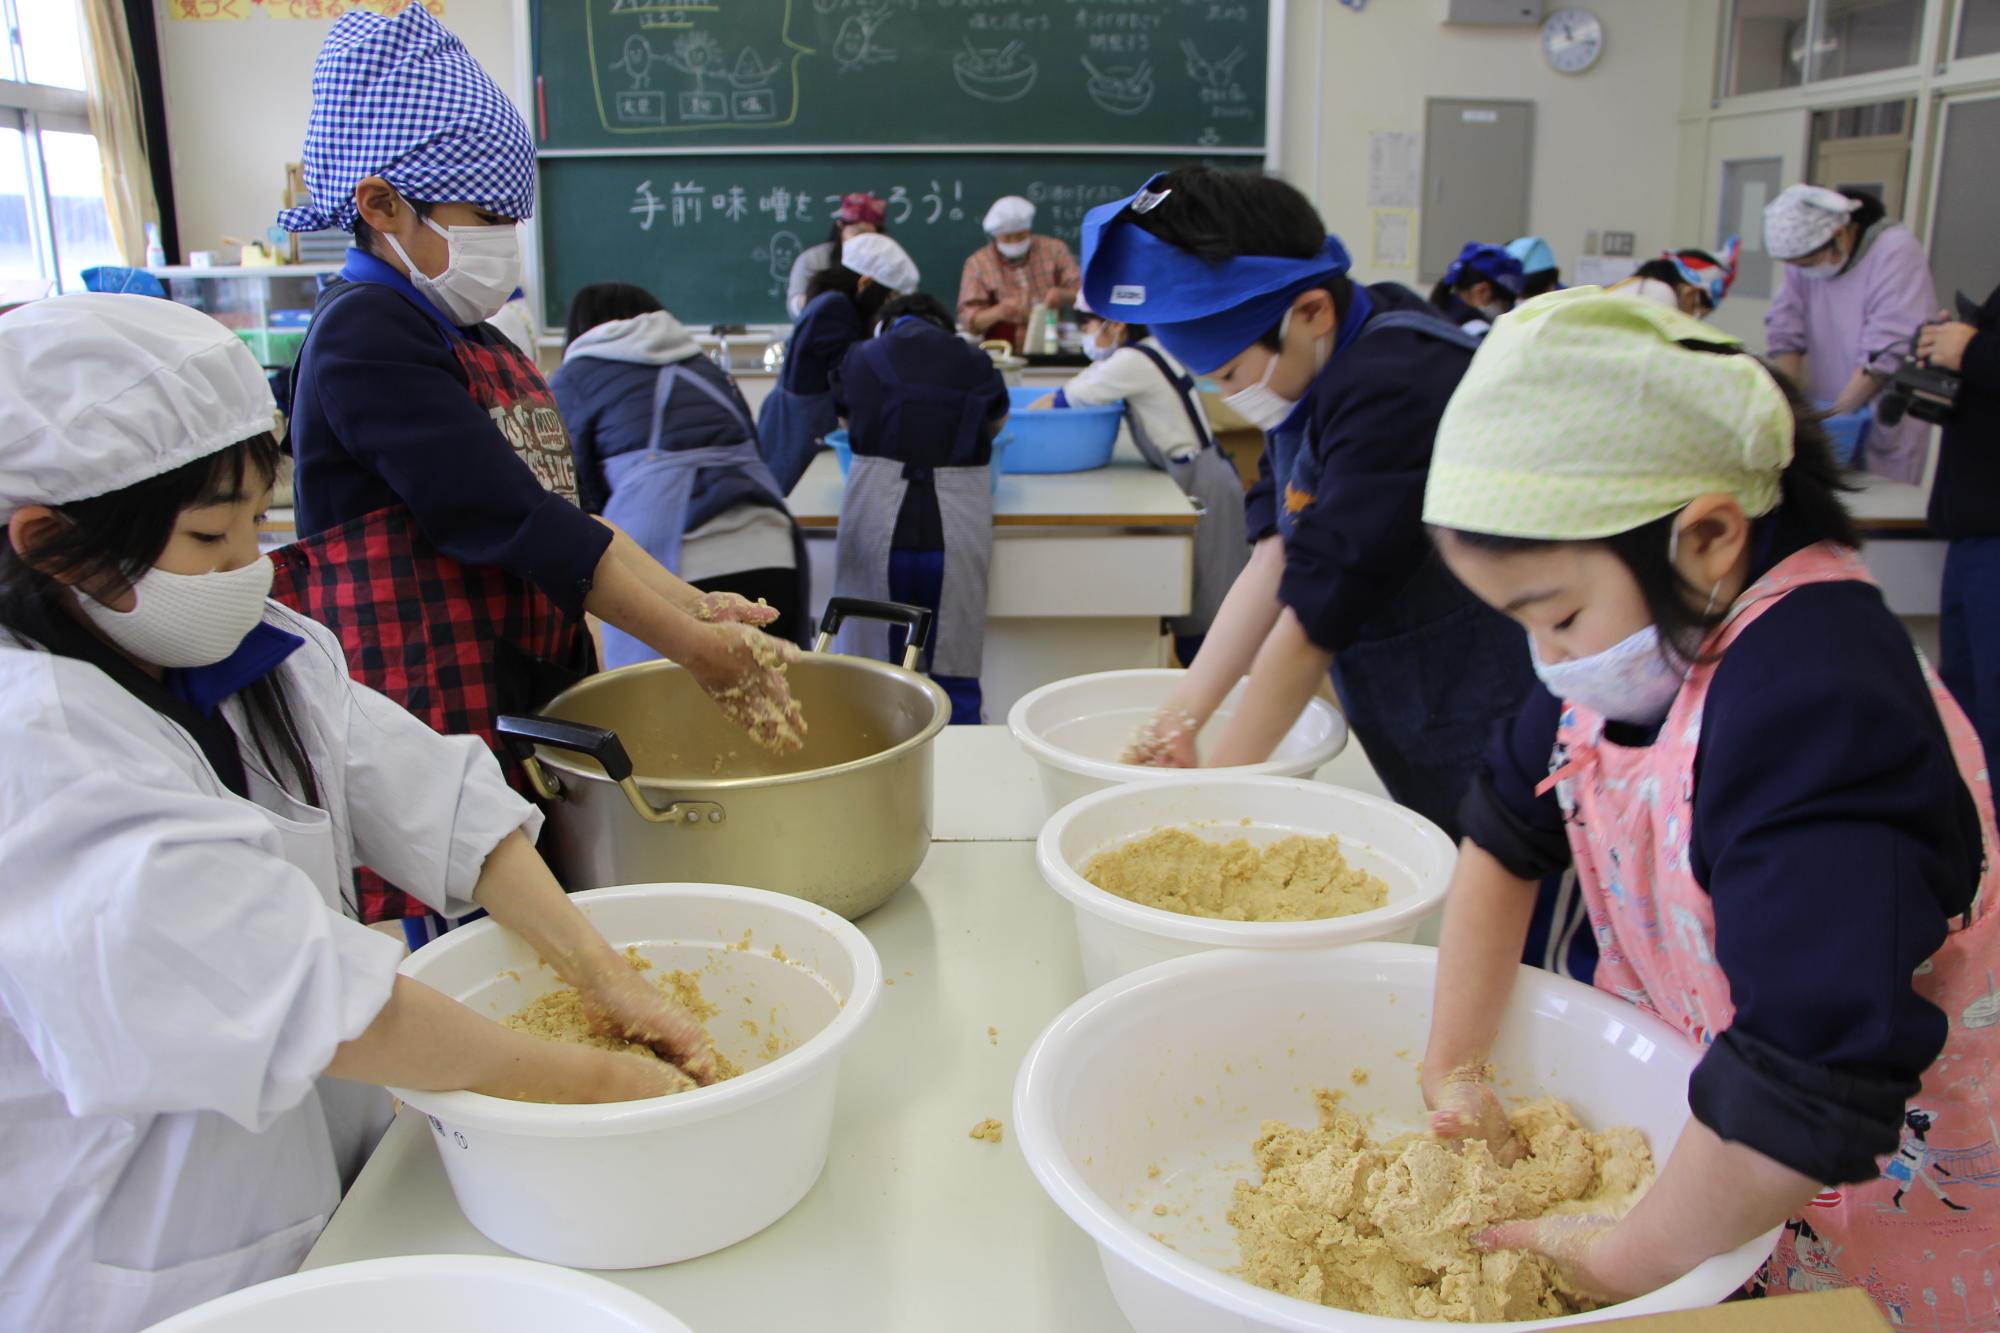 神野小学校の調理室で大豆を手でつぶしながらみその仕込み作業をする子どもたちの写真